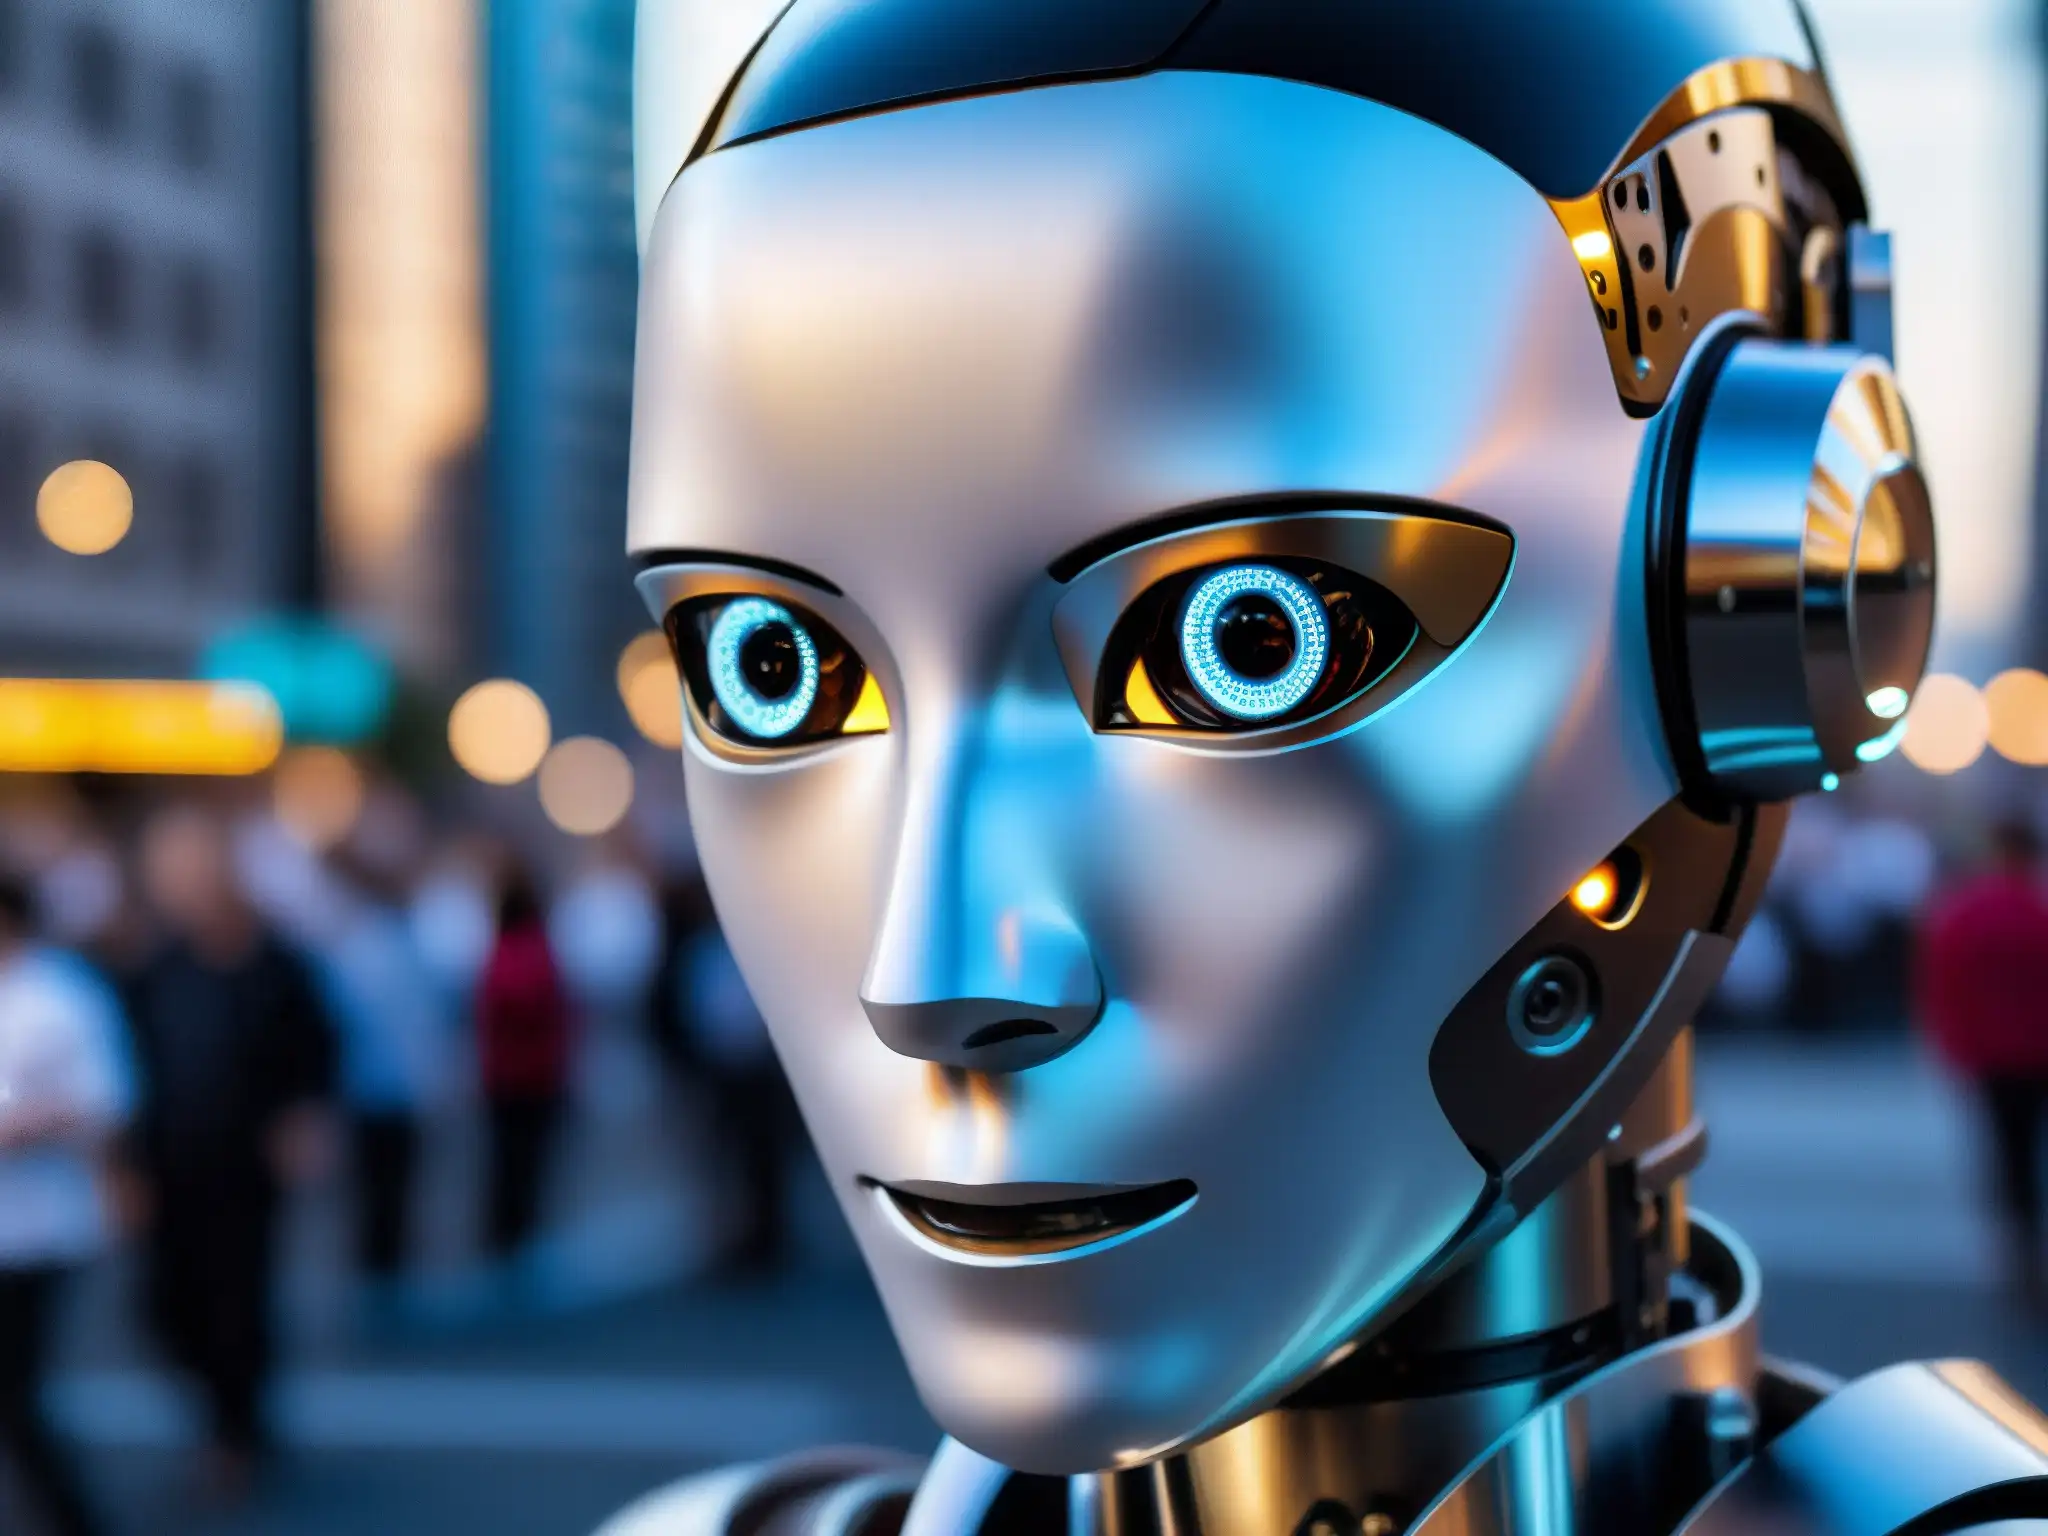 Robot humanoide interactuando con personas en la ciudad, fusionando inteligencia artificial y emoción humana, creando terror y fascinación